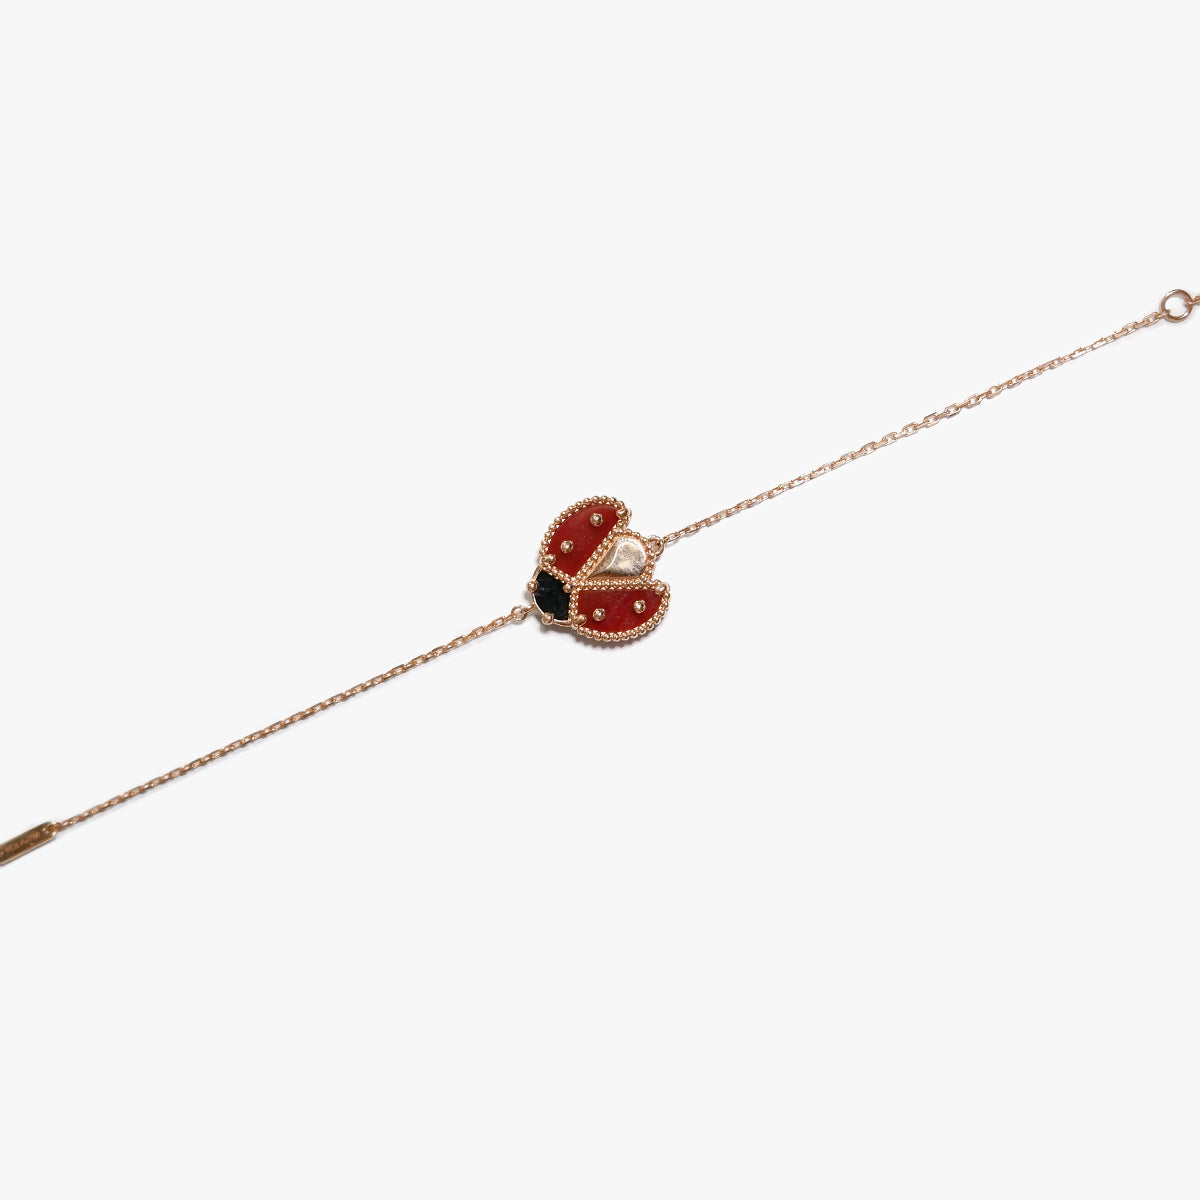 The Ladybug Bracelet in Solid Gold